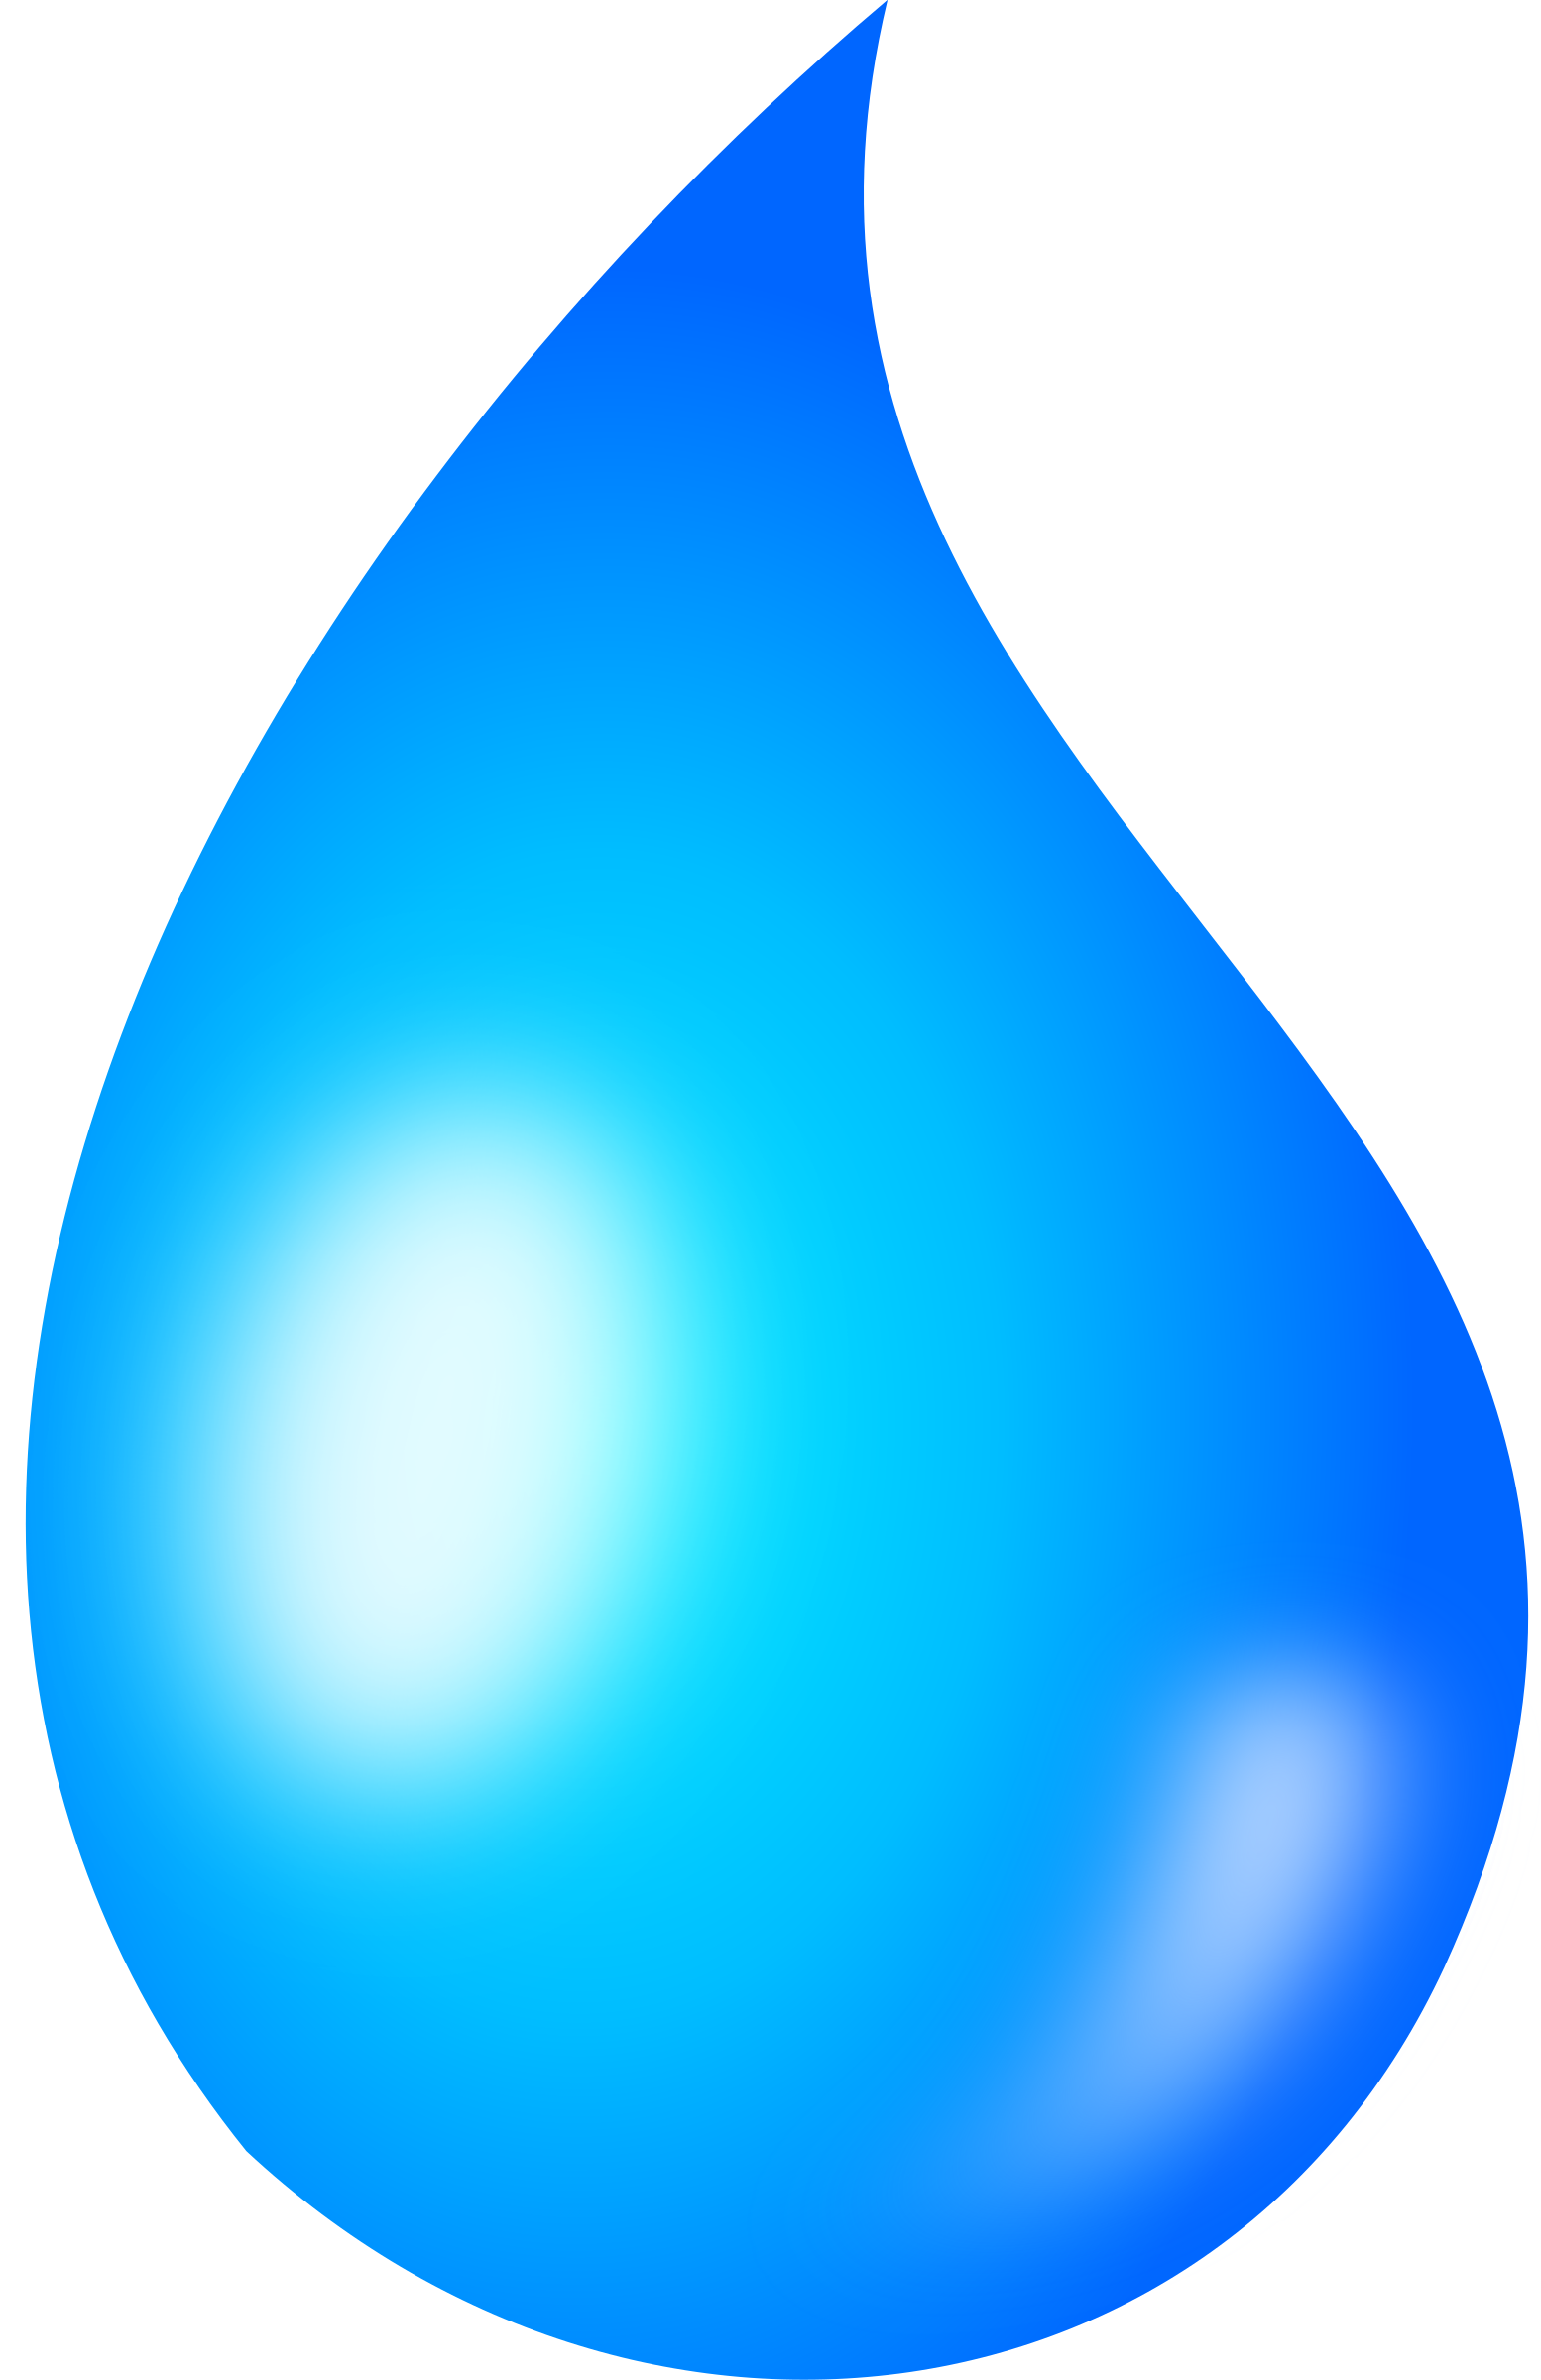 Blue water drops Vector, Wate